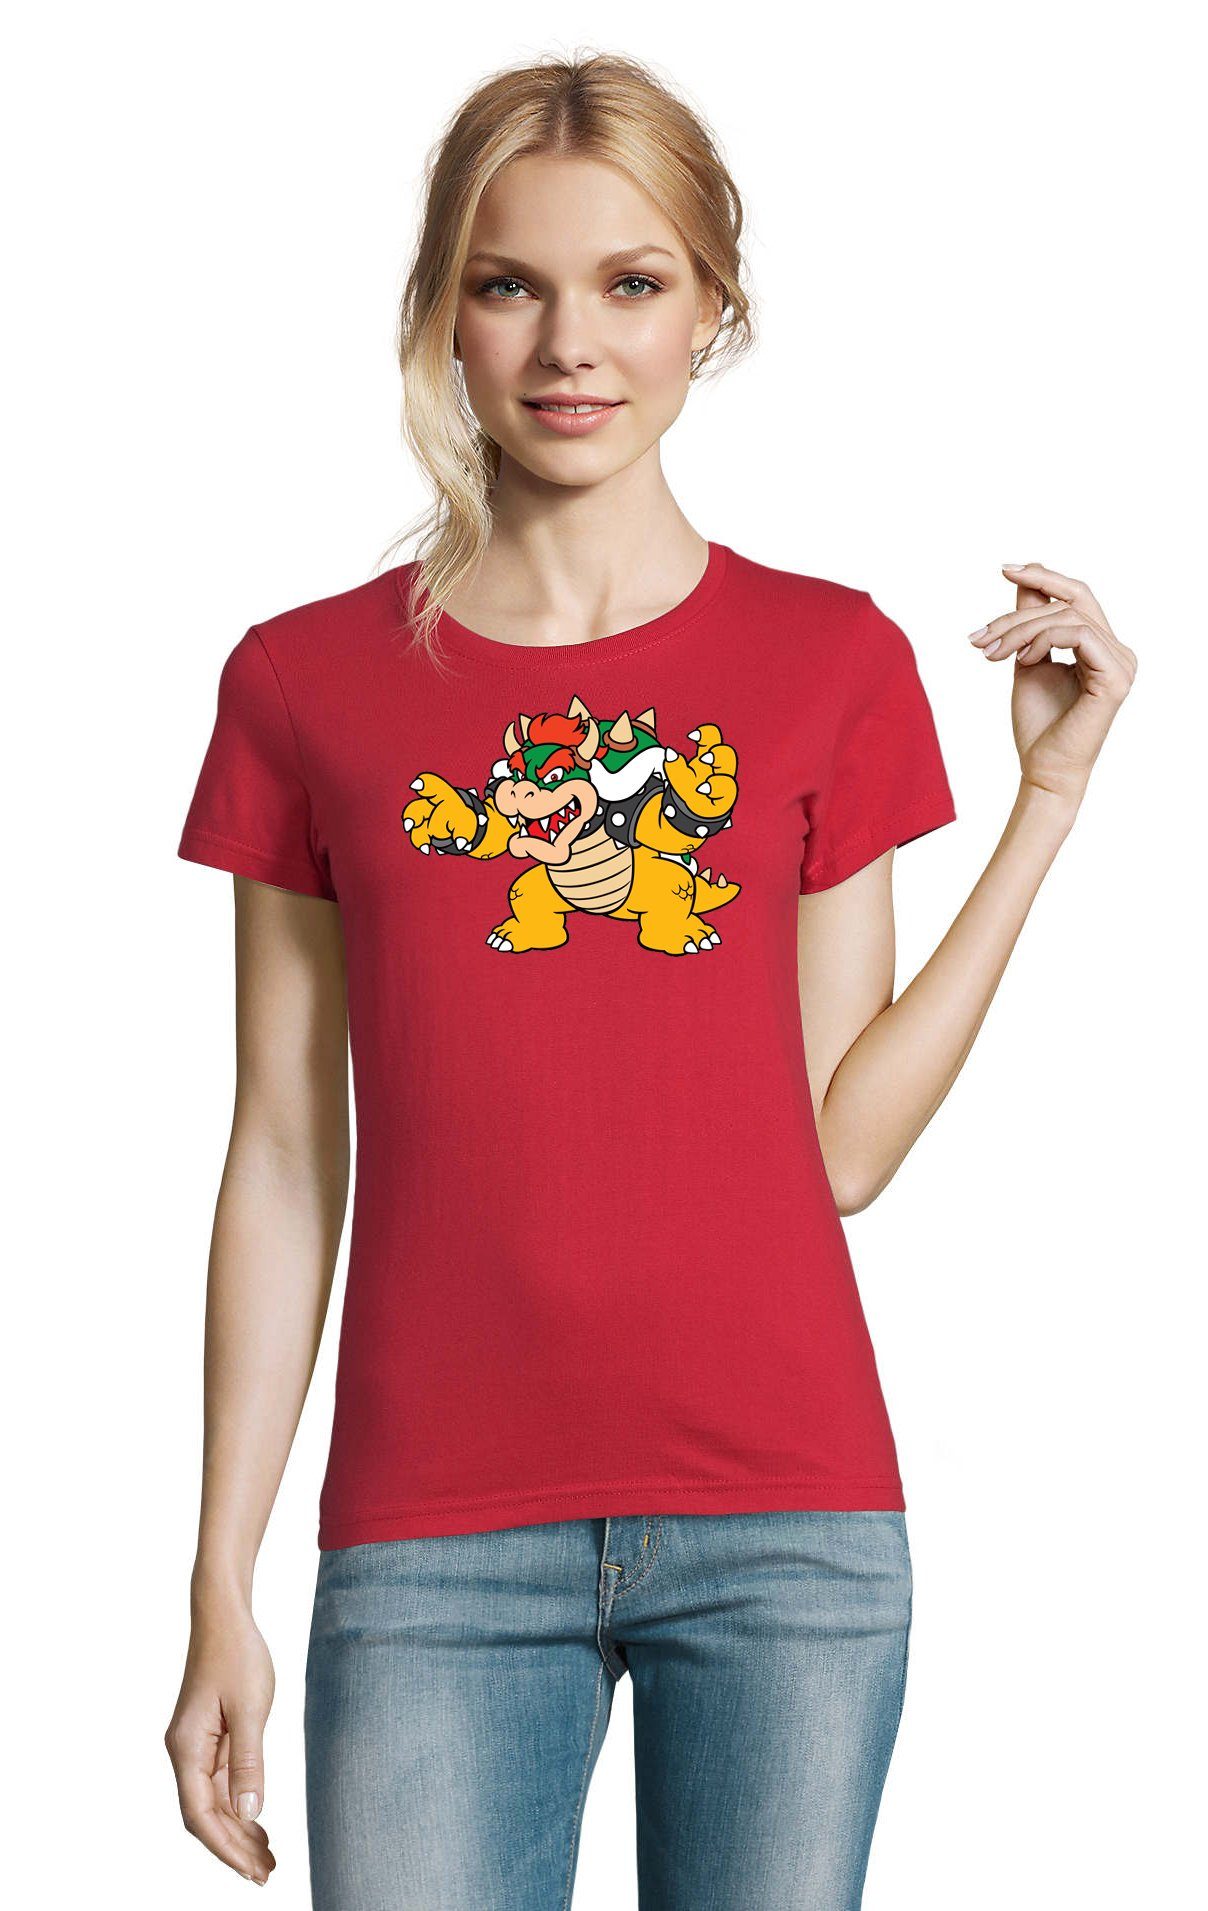 Blondie & Brownie T-Shirt Bowser Yoshi Nintendo Game Luigi Rot Konsole Gaming Gamer Damen Mario